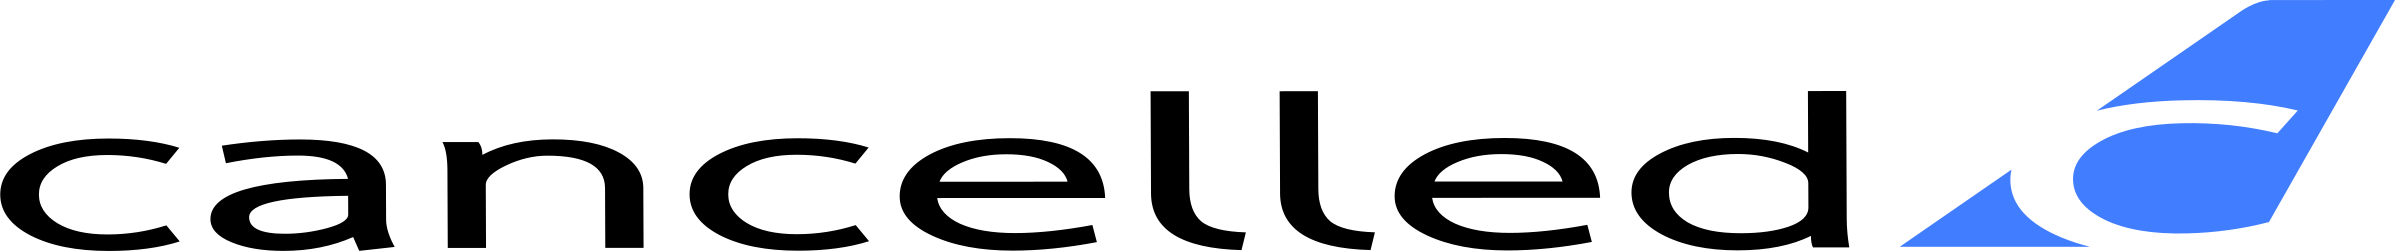 Ylex logo